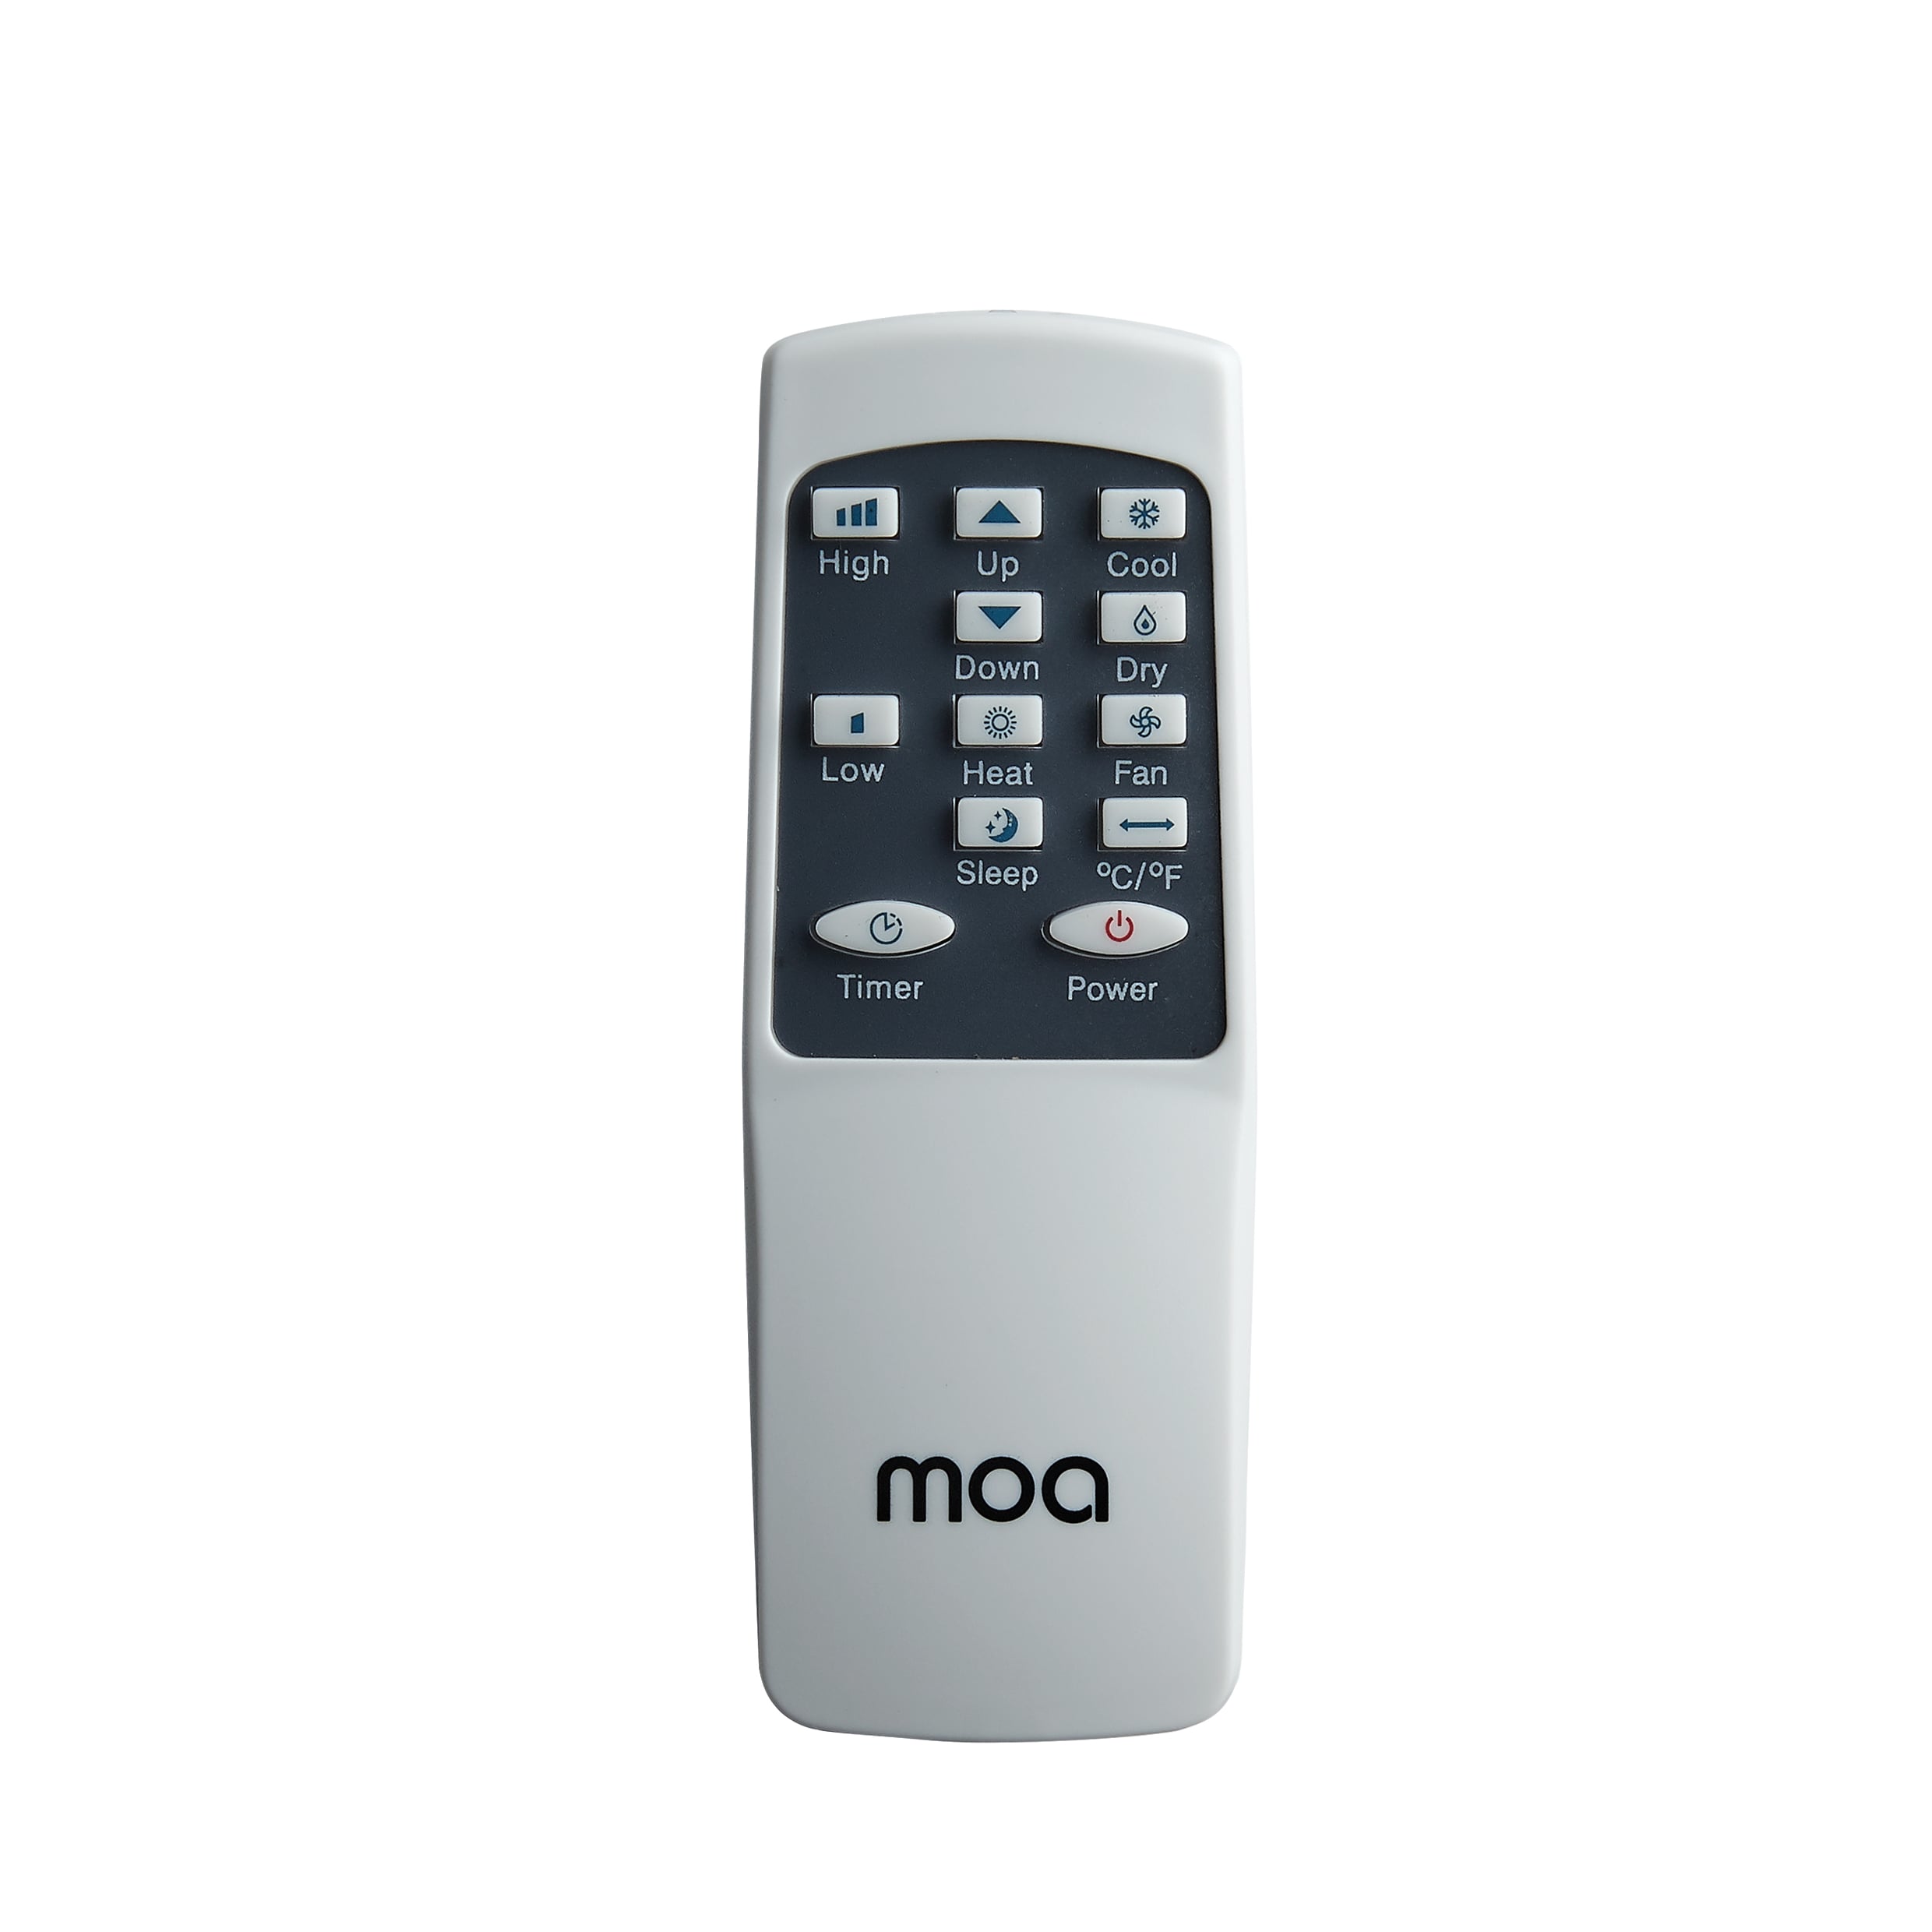 MOA Mobiele Airco - A011